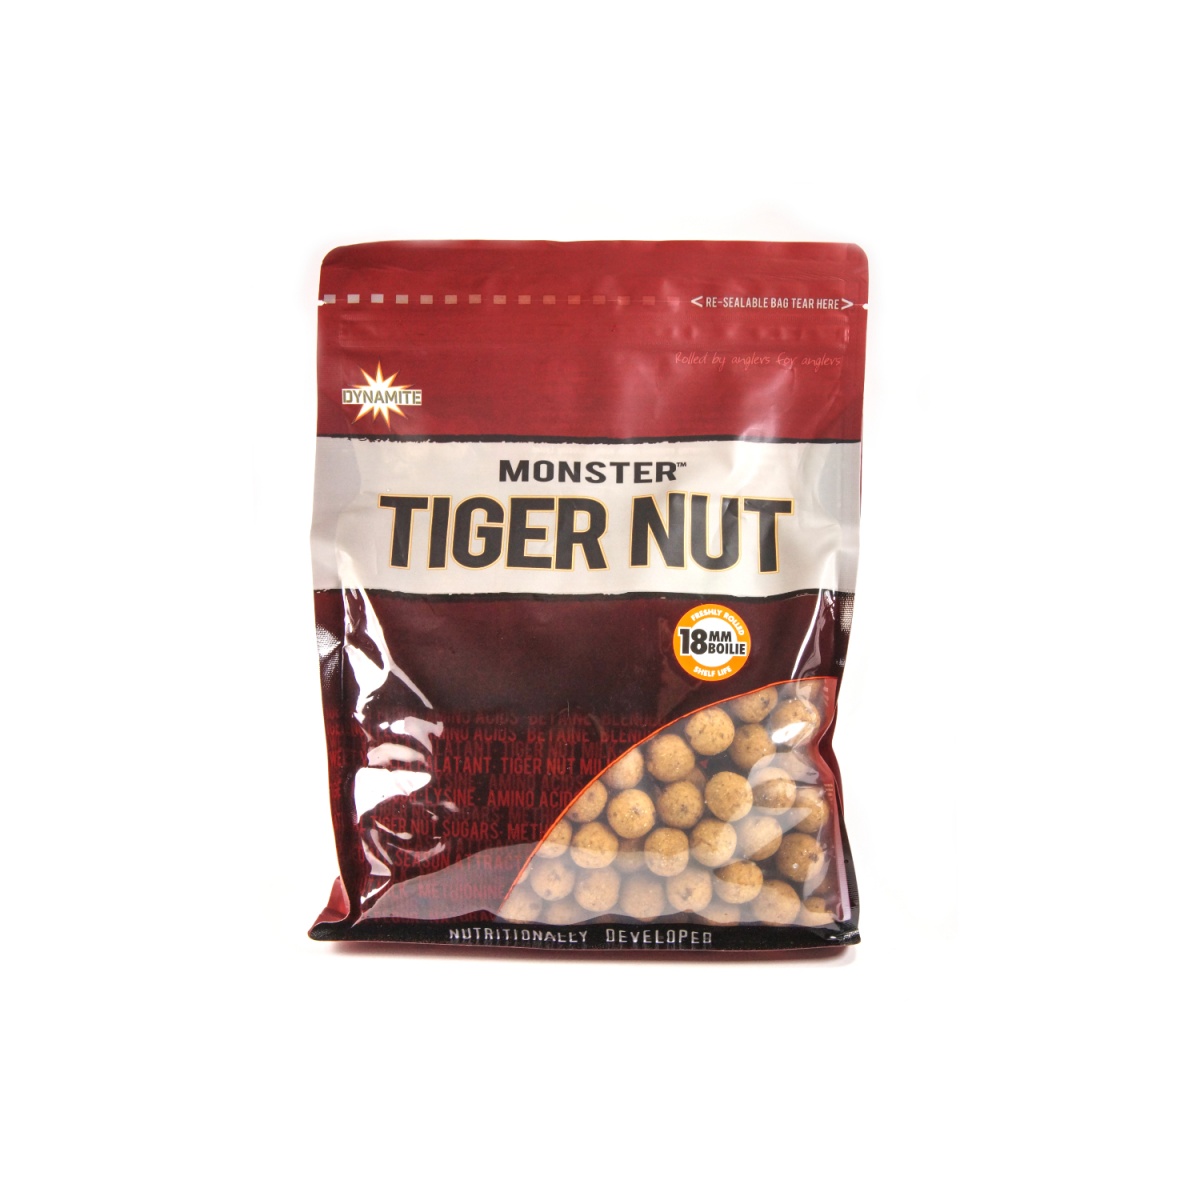 NEW DynamiteBaits Monster Tiger Nut Boilie - Kulki Proteinowe 18 mm / 1kg rozmiar / opakowanie